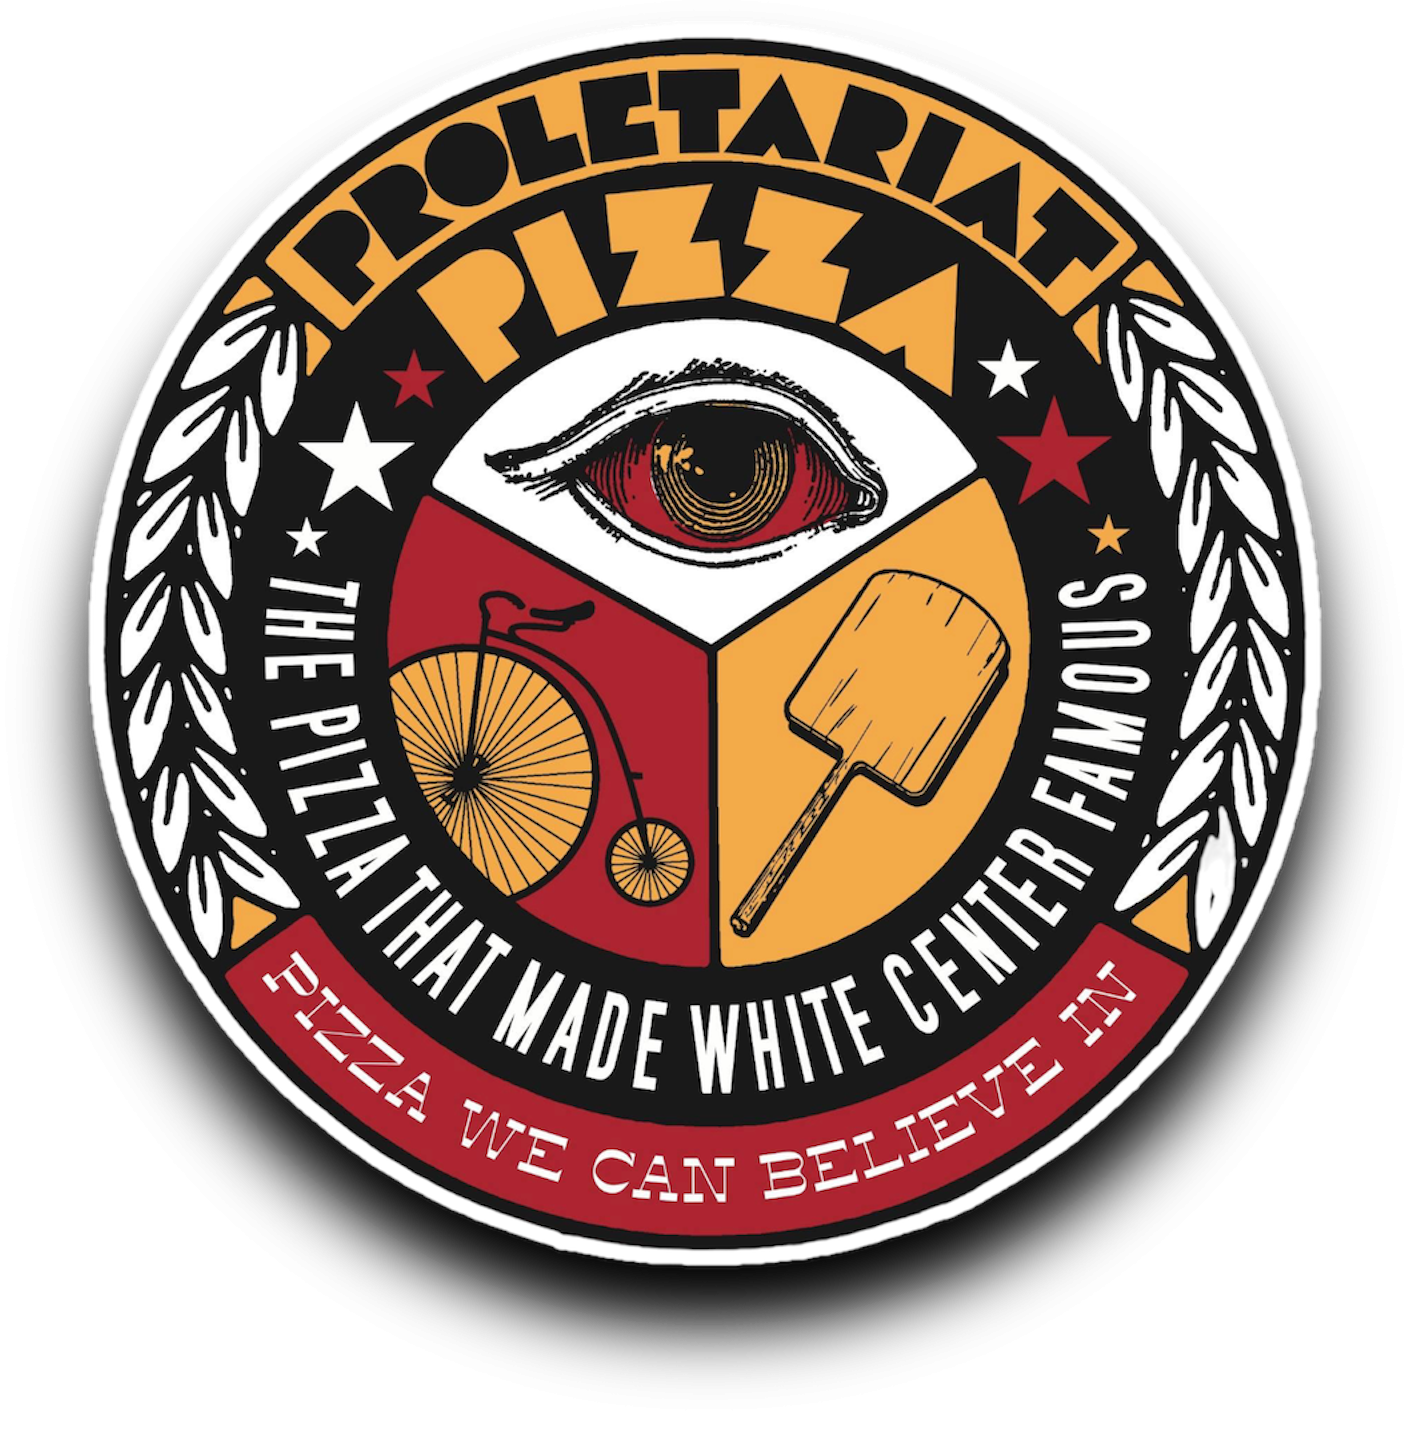 Proletariat Pizza Rat City